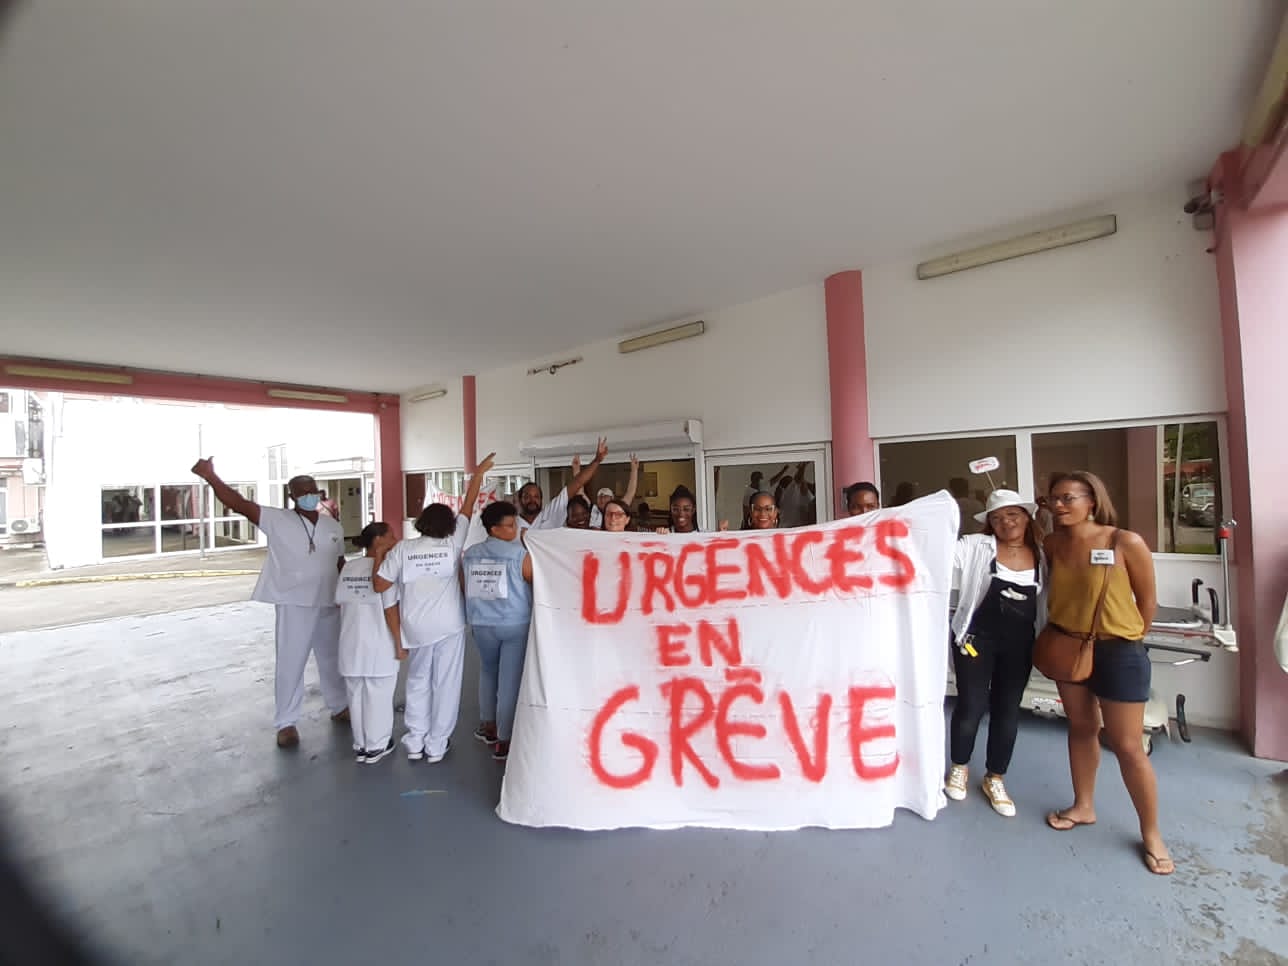     Grève déclenchée aux Urgences de l’hôpital de La Trinité

